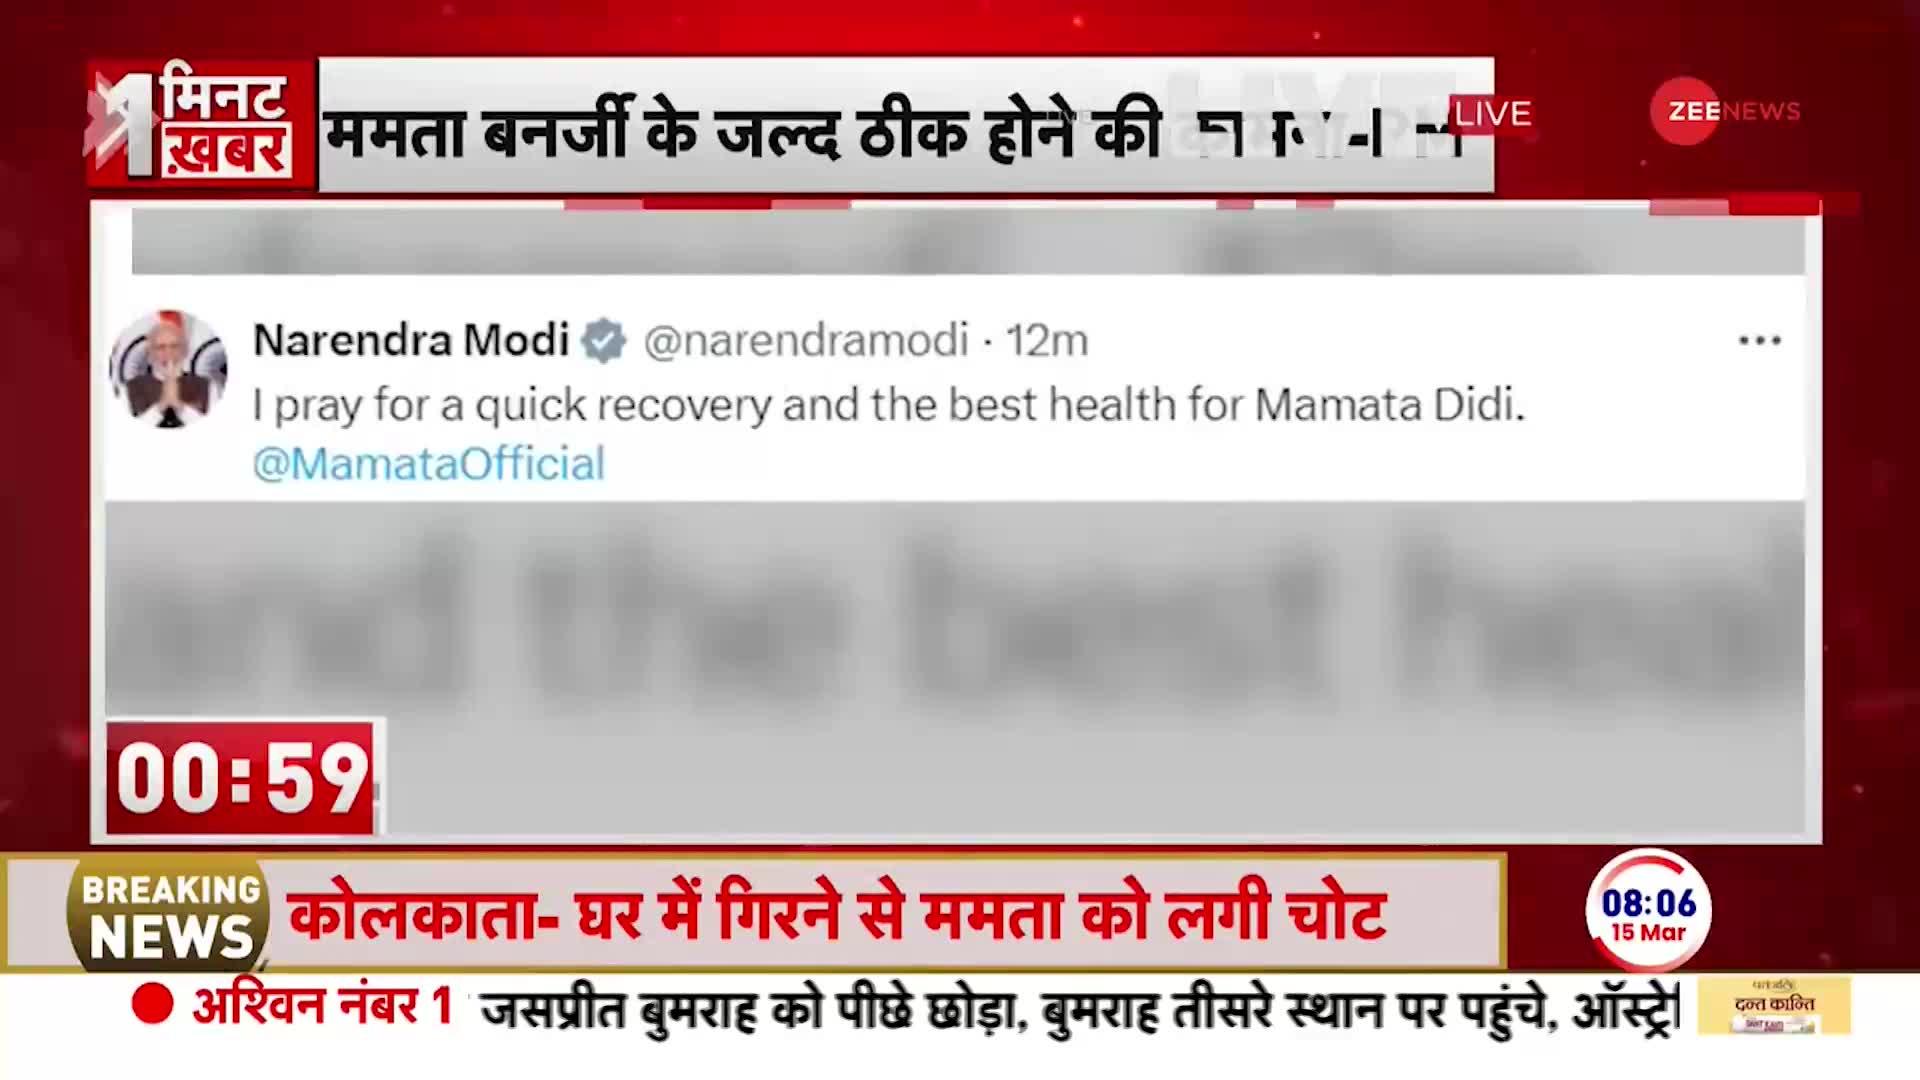 Mamata Banerjee Heath Update: ममता बनर्जी के स्वास्थ्य को लेकर, पीएम मोदी समेत कई विपक्षी नेताओं ने ट्वीट किया